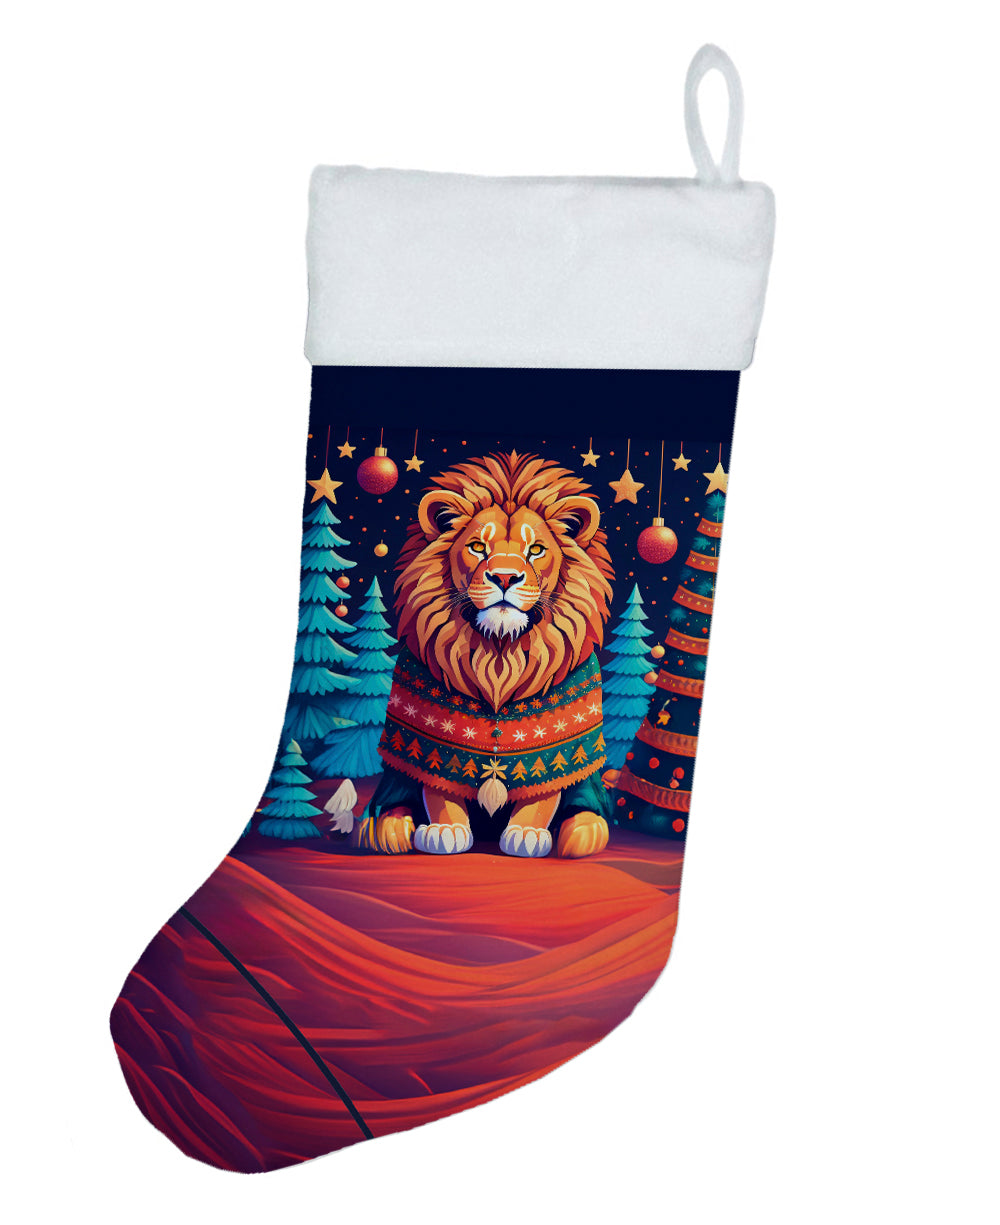 Buy this Lion Christmas Christmas Stocking